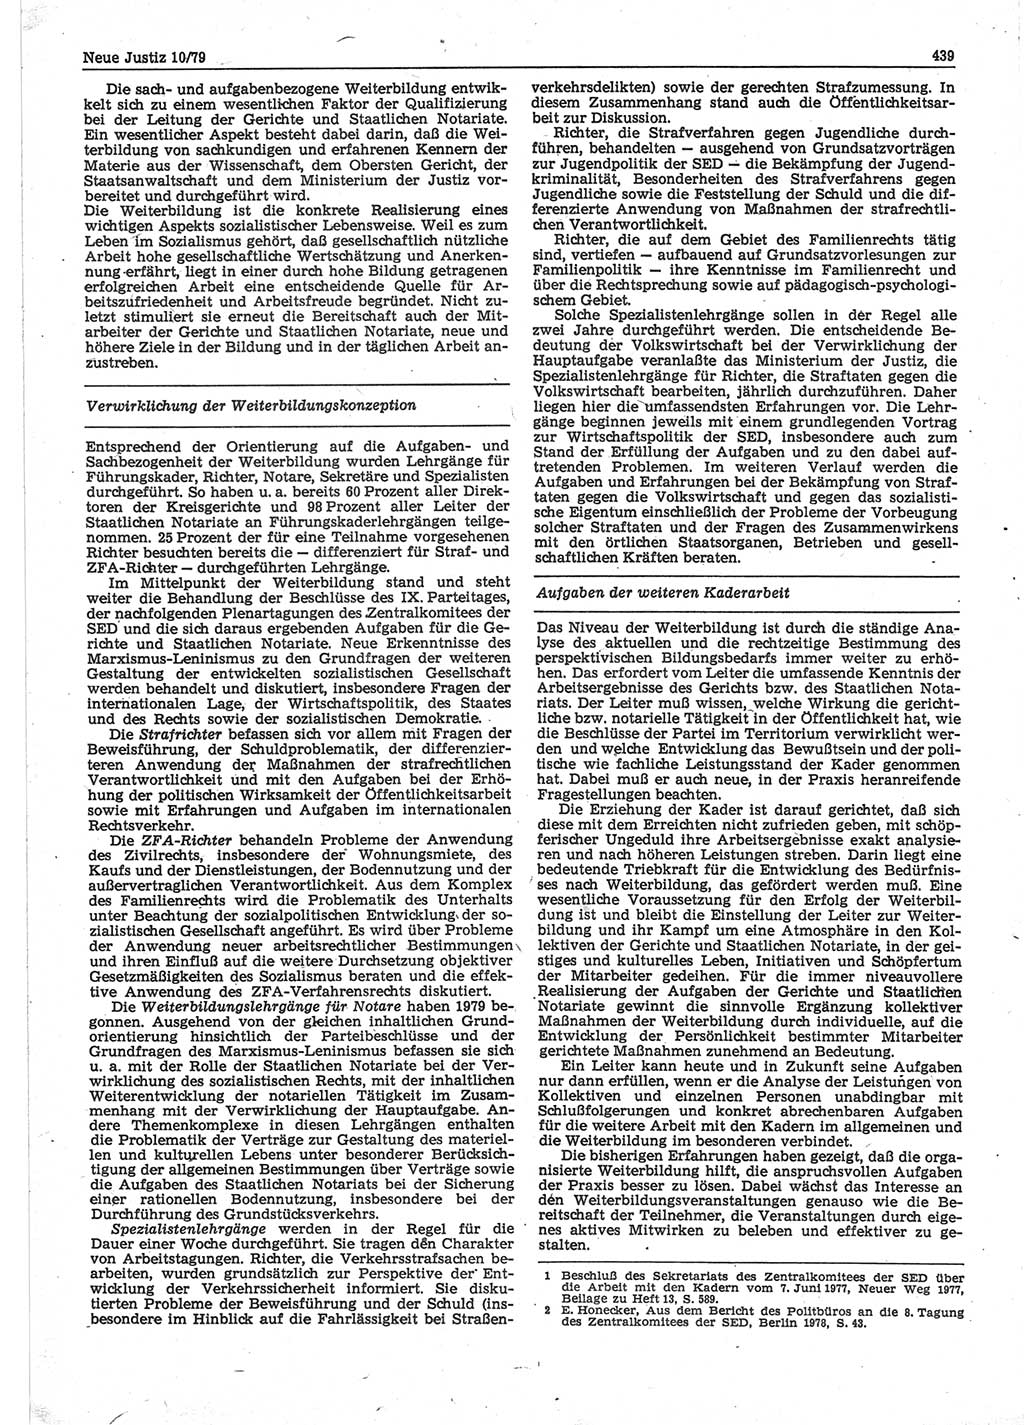 Neue Justiz (NJ), Zeitschrift für sozialistisches Recht und Gesetzlichkeit [Deutsche Demokratische Republik (DDR)], 33. Jahrgang 1979, Seite 439 (NJ DDR 1979, S. 439)